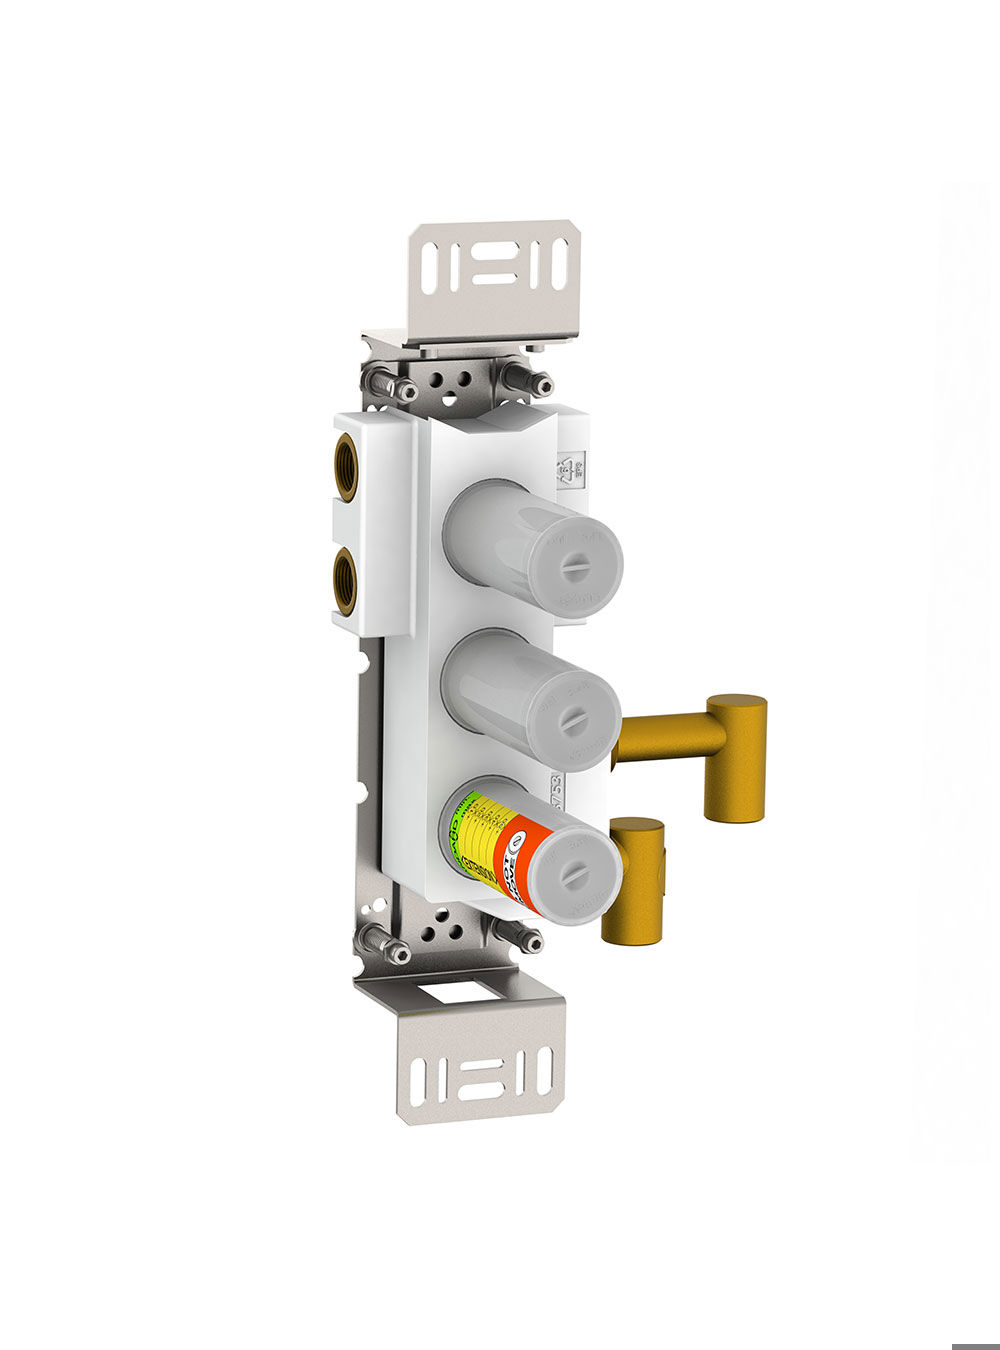 5600VA3: 3-vägs termostatblandare, lodrätt montage.¾" anslutning för CU-, stål- eller pexrör. 